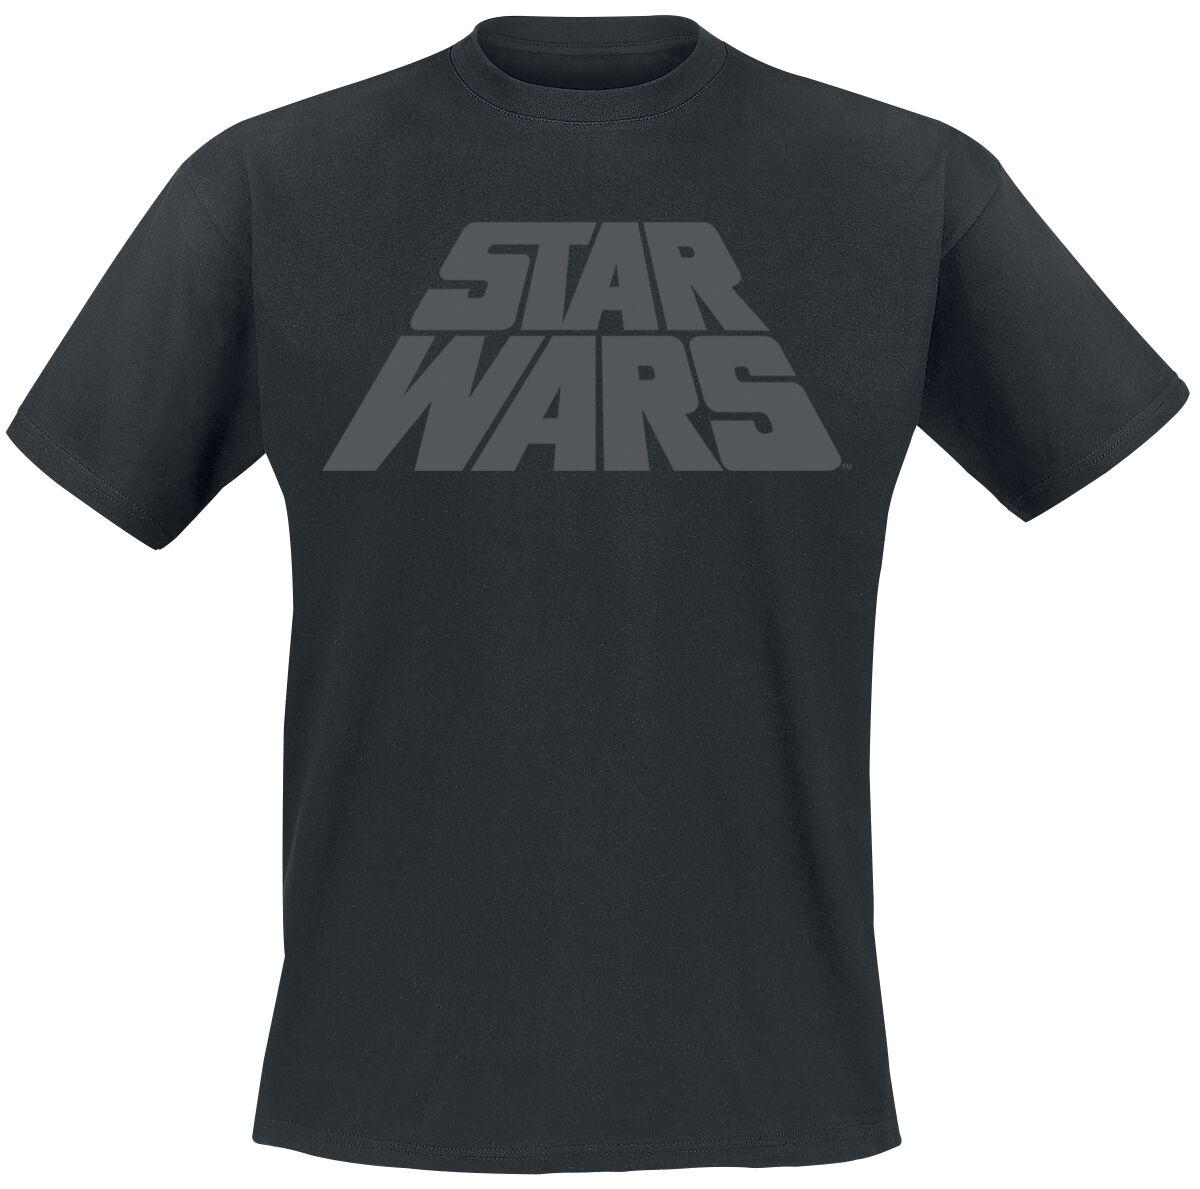 Star Wars T-Shirt - Logo - M bis 3XL - für Männer - Größe L - schwarz  - EMP exklusives Merchandise!